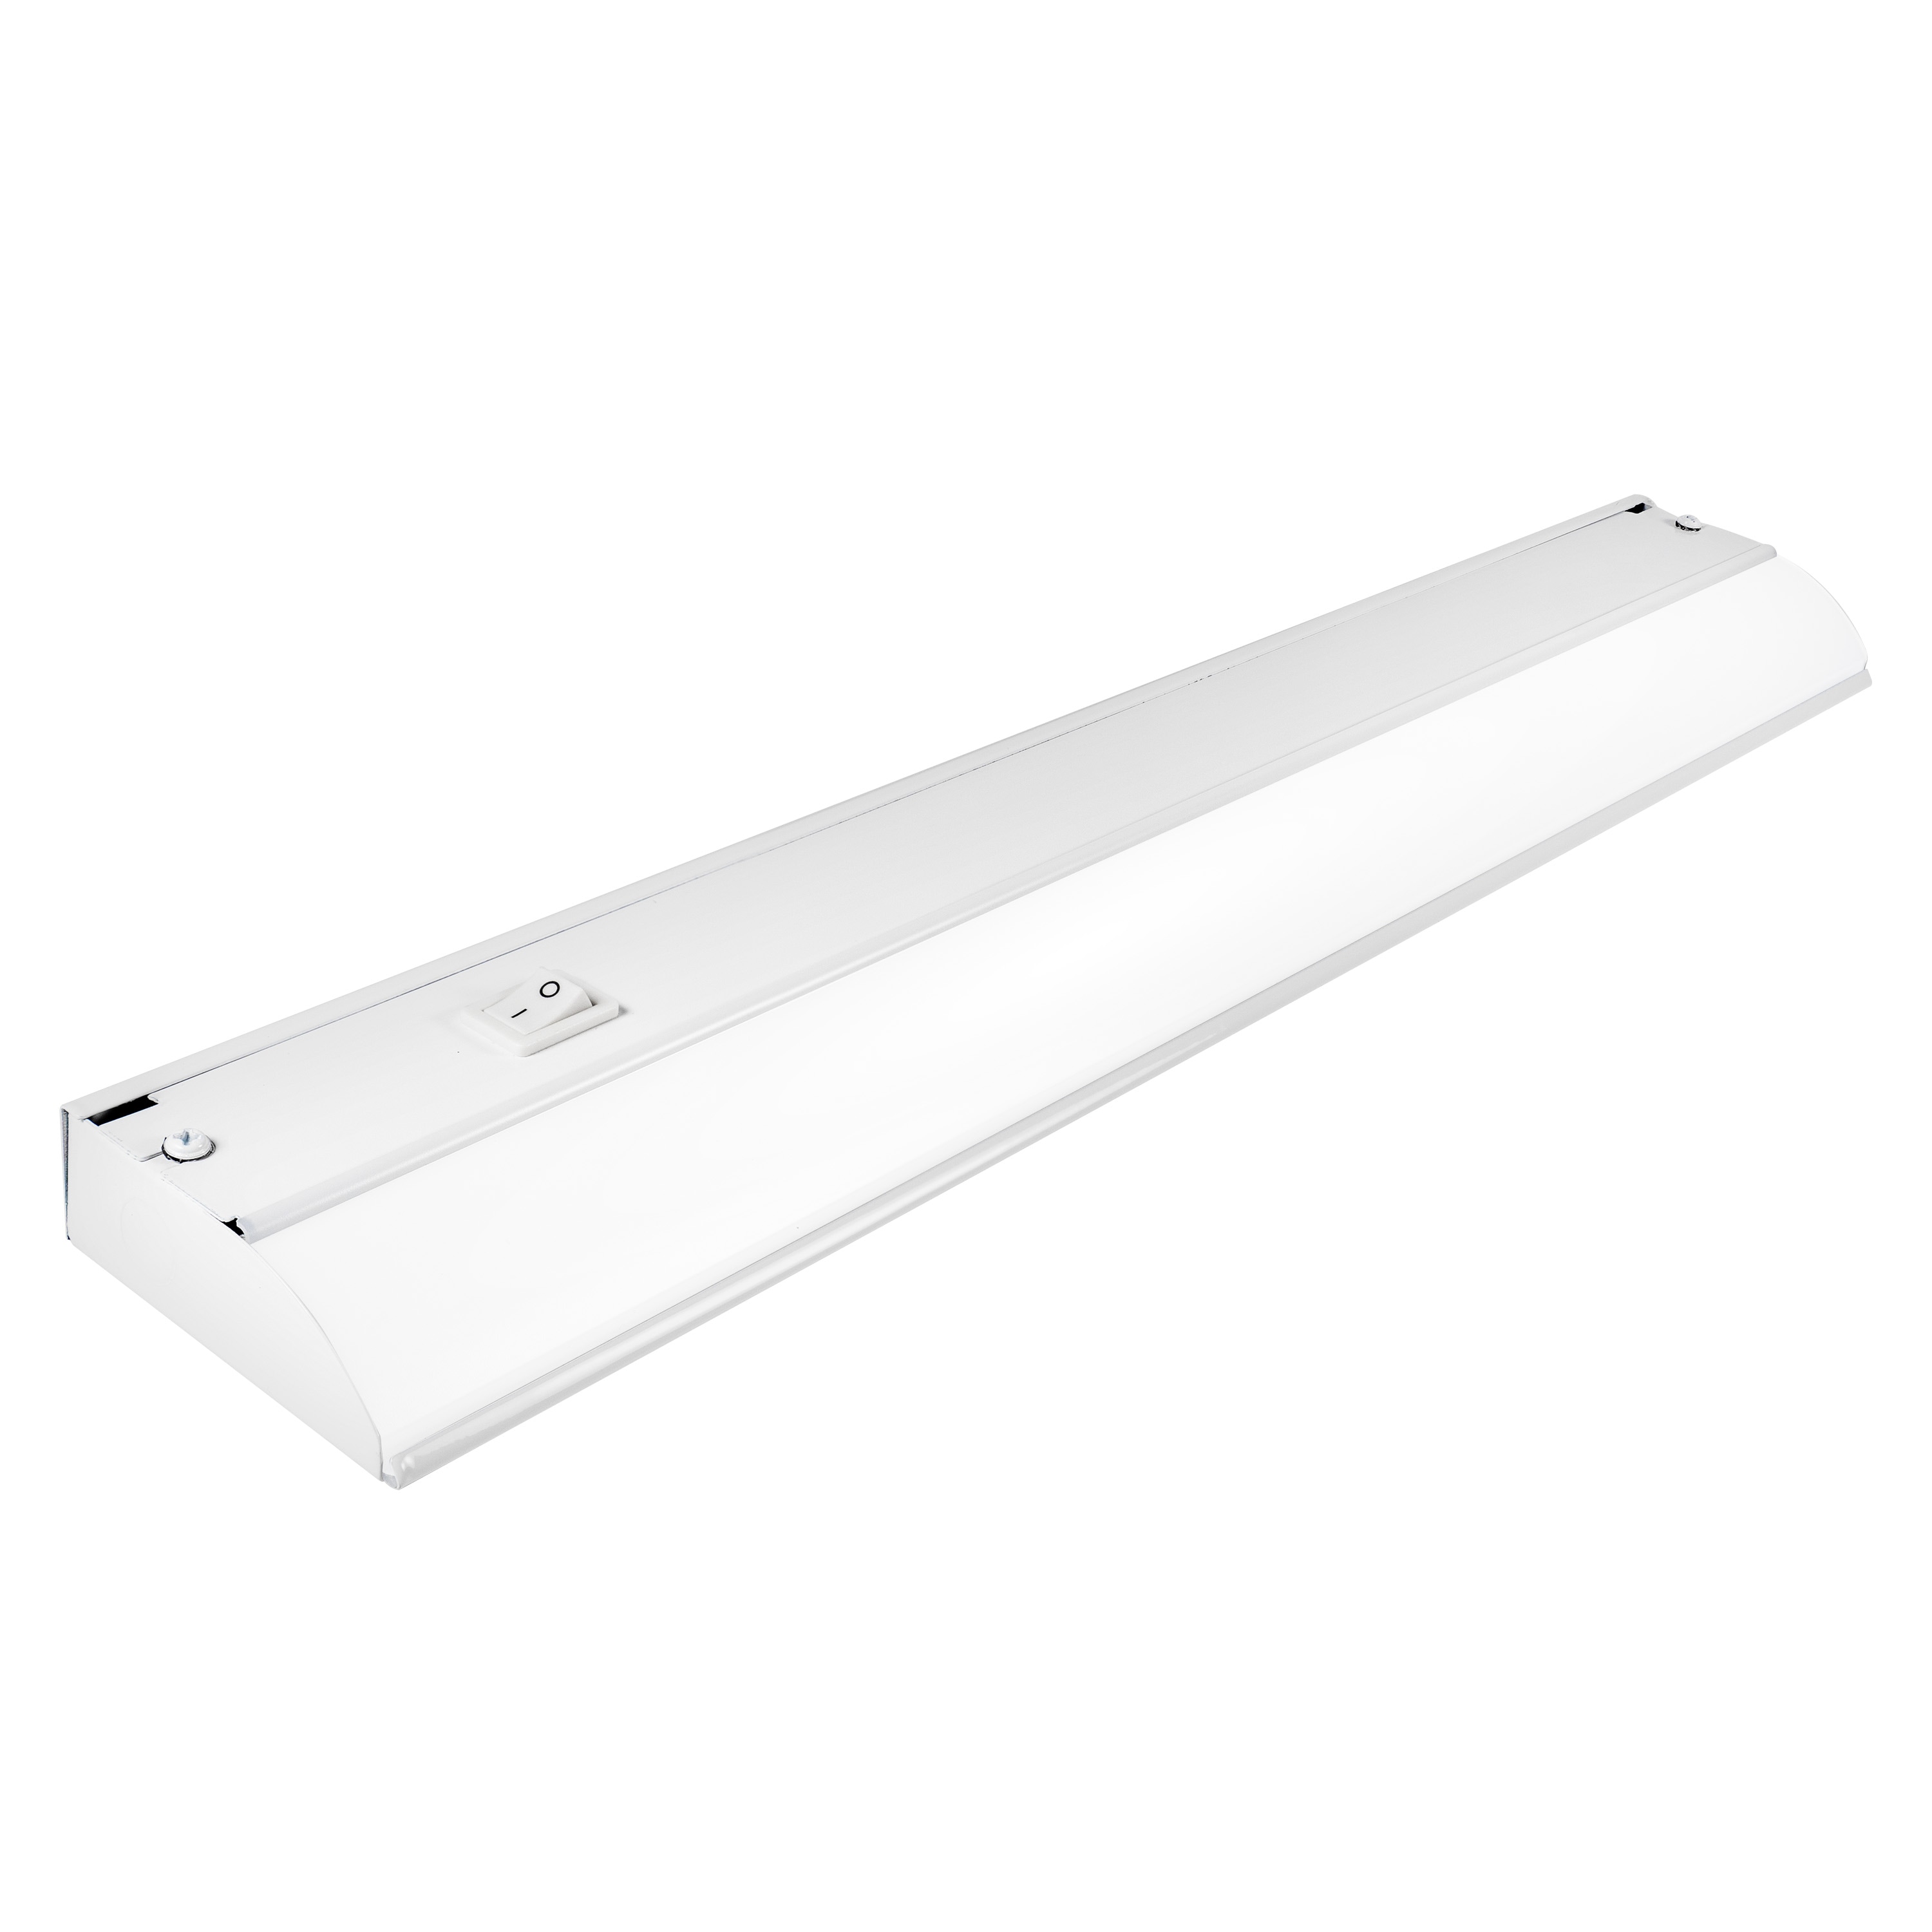 Black+decker LED Under Cabinet Lighting Kit, 9, Warm White - 5